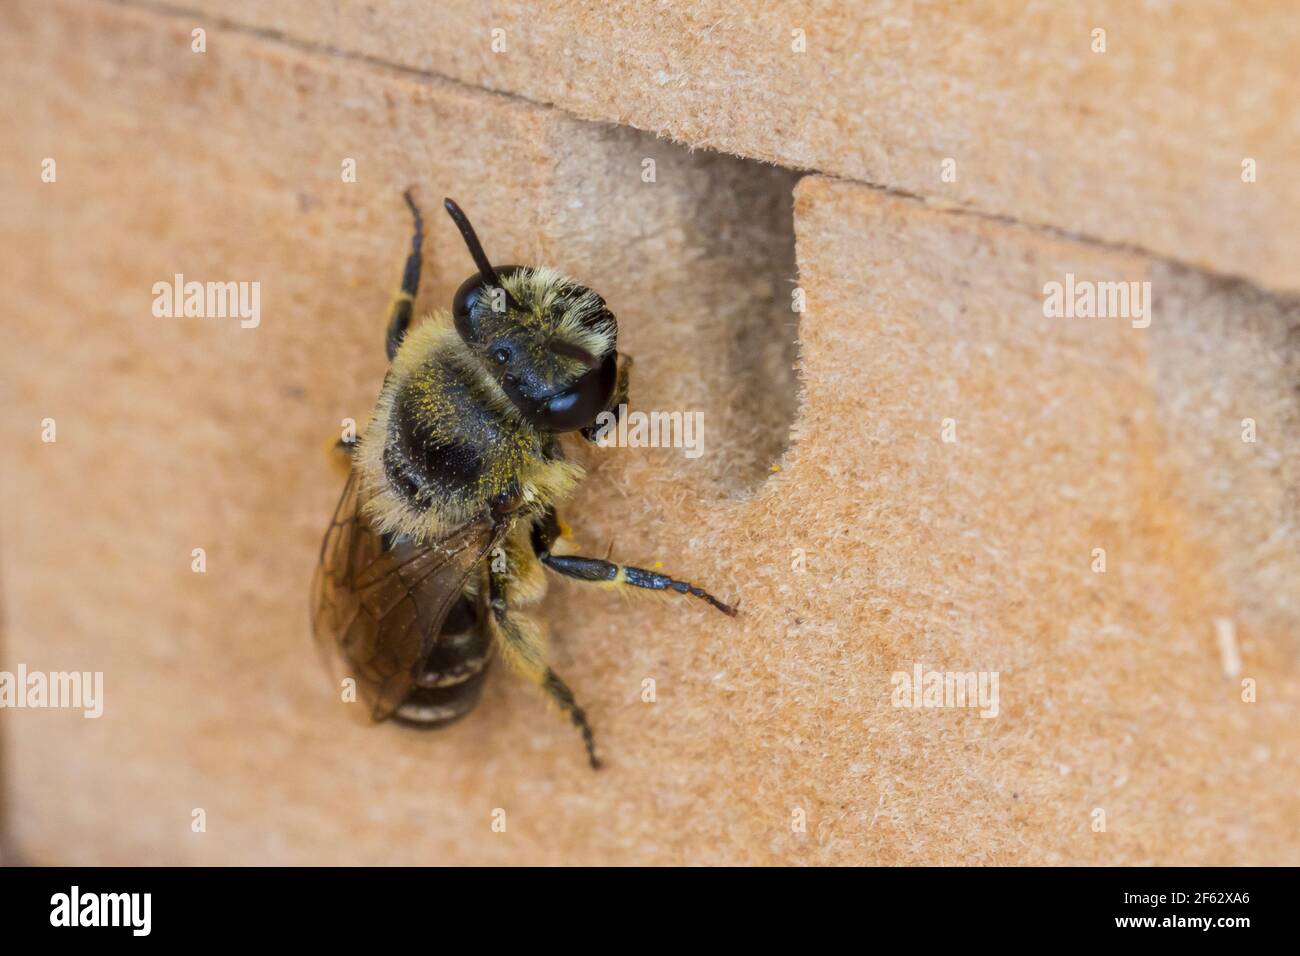 Seidenbiene, Gemeine Seidenbiene, Buckel-Seidenbiene, Buckelseidenbiene, Weibchen, am Loch in einer Insekten-Nisthilfe, Colletes daviesanus, Davies' C Stock Photo